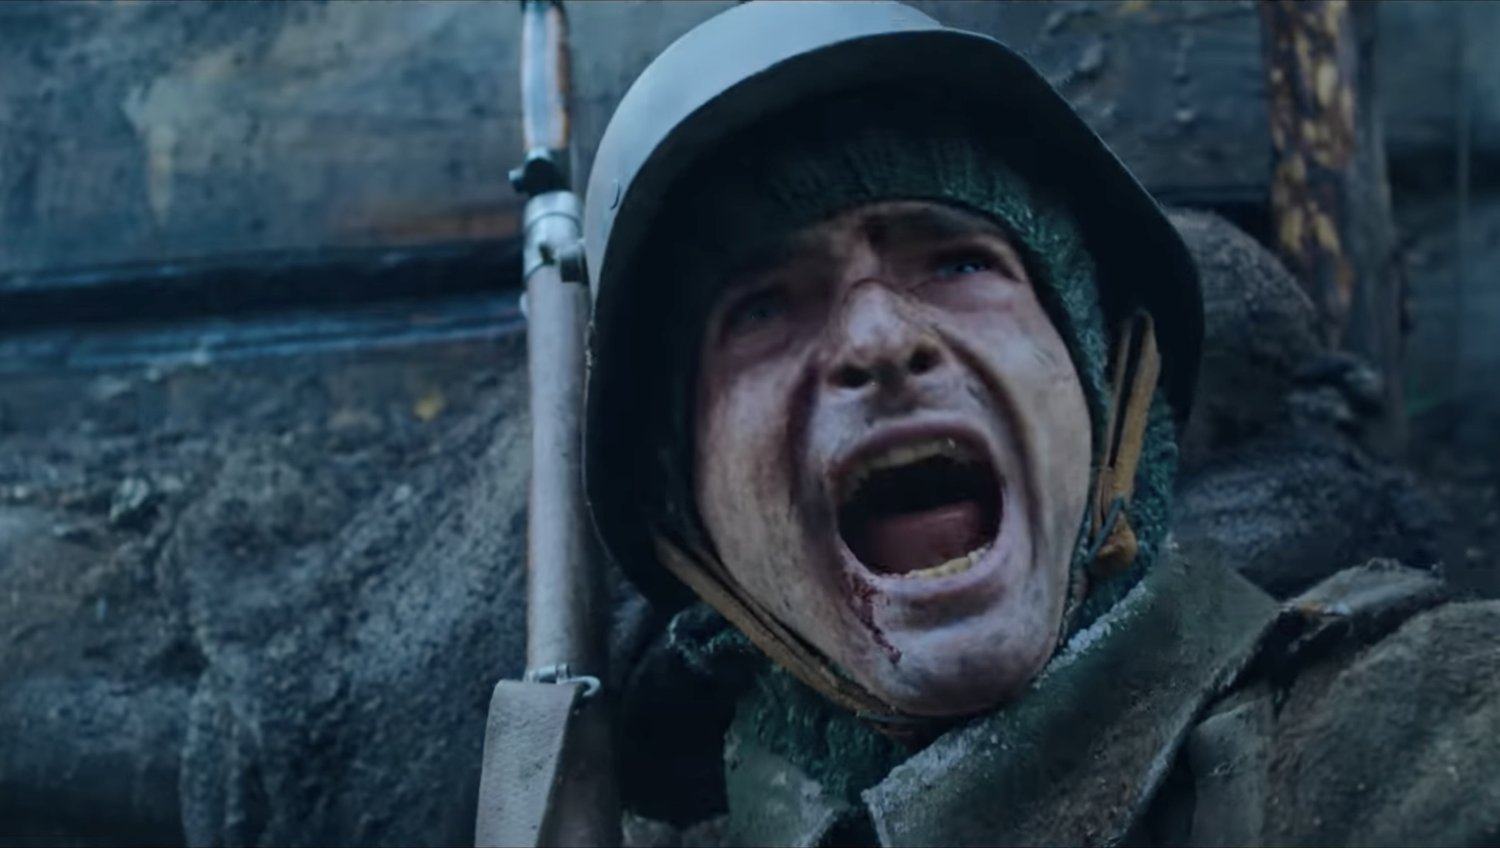 Bande-annonce puissante et émouvante pour l’adaptation par Netflix de l’épopée de la Première Guerre mondiale TOUS SILENCIEUX SUR LE FRONT OUEST